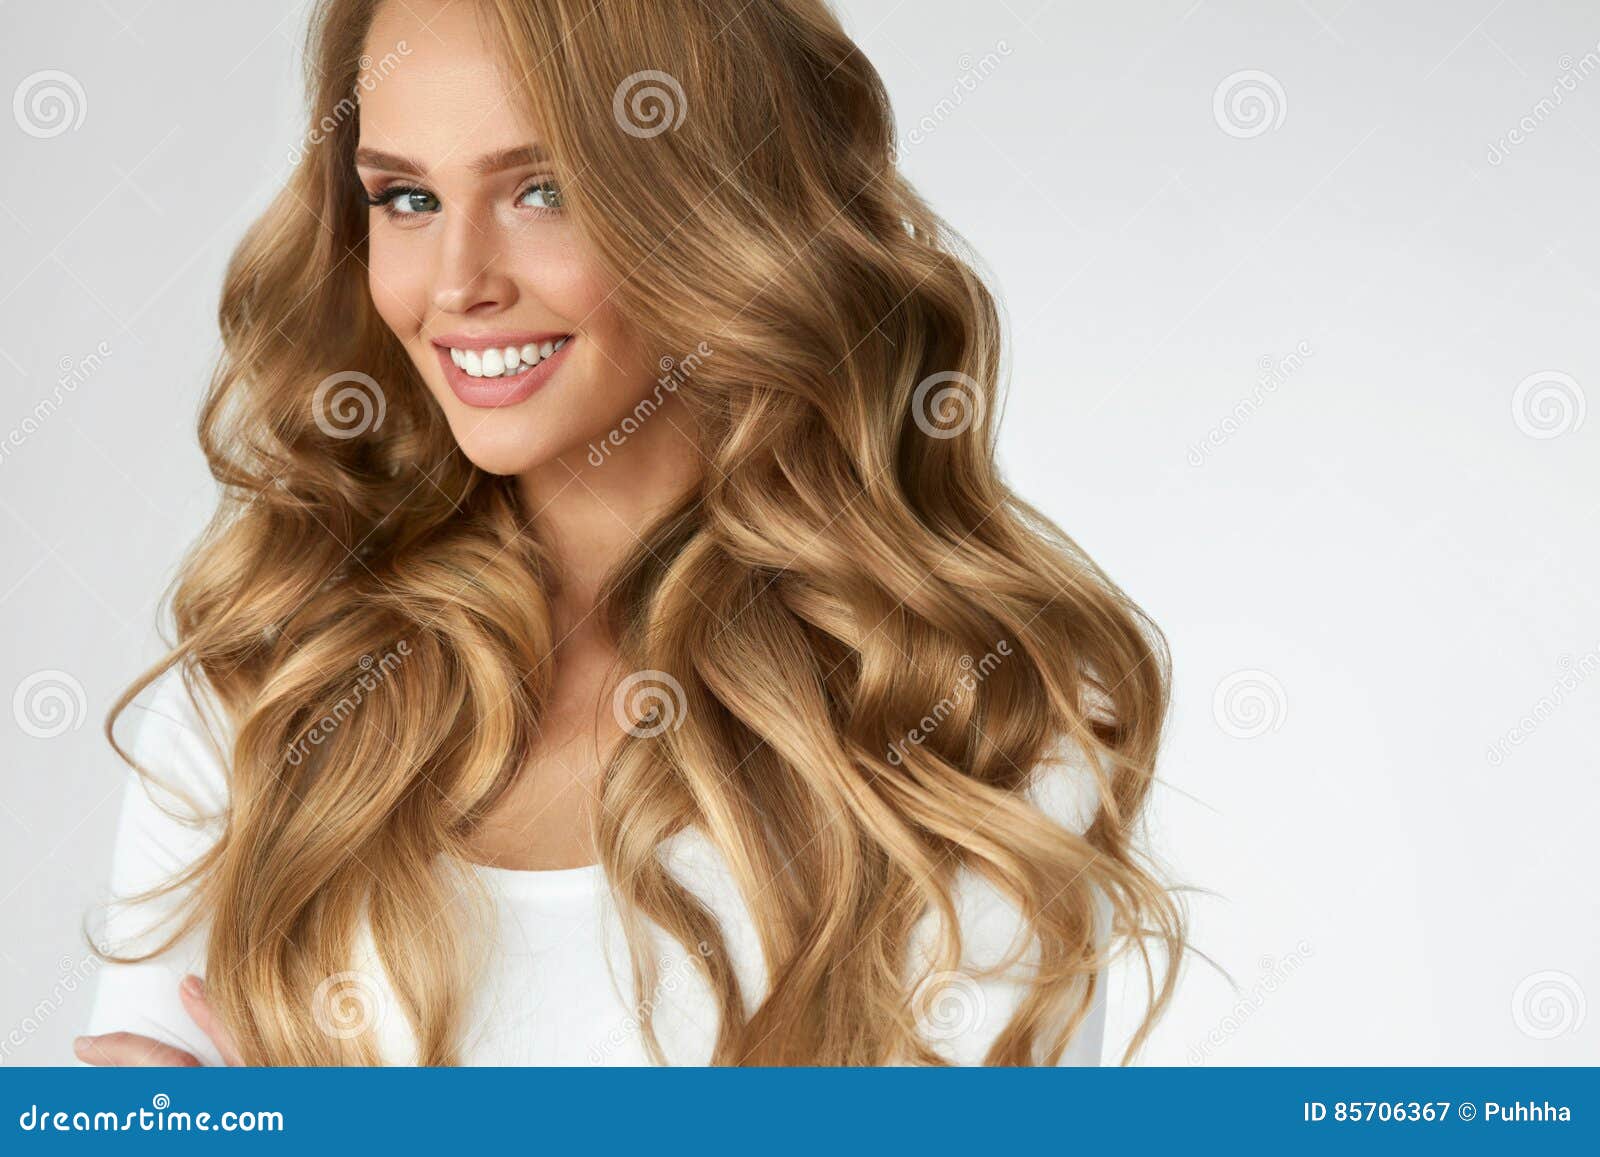 573,197 Curly Hair Stock Photos